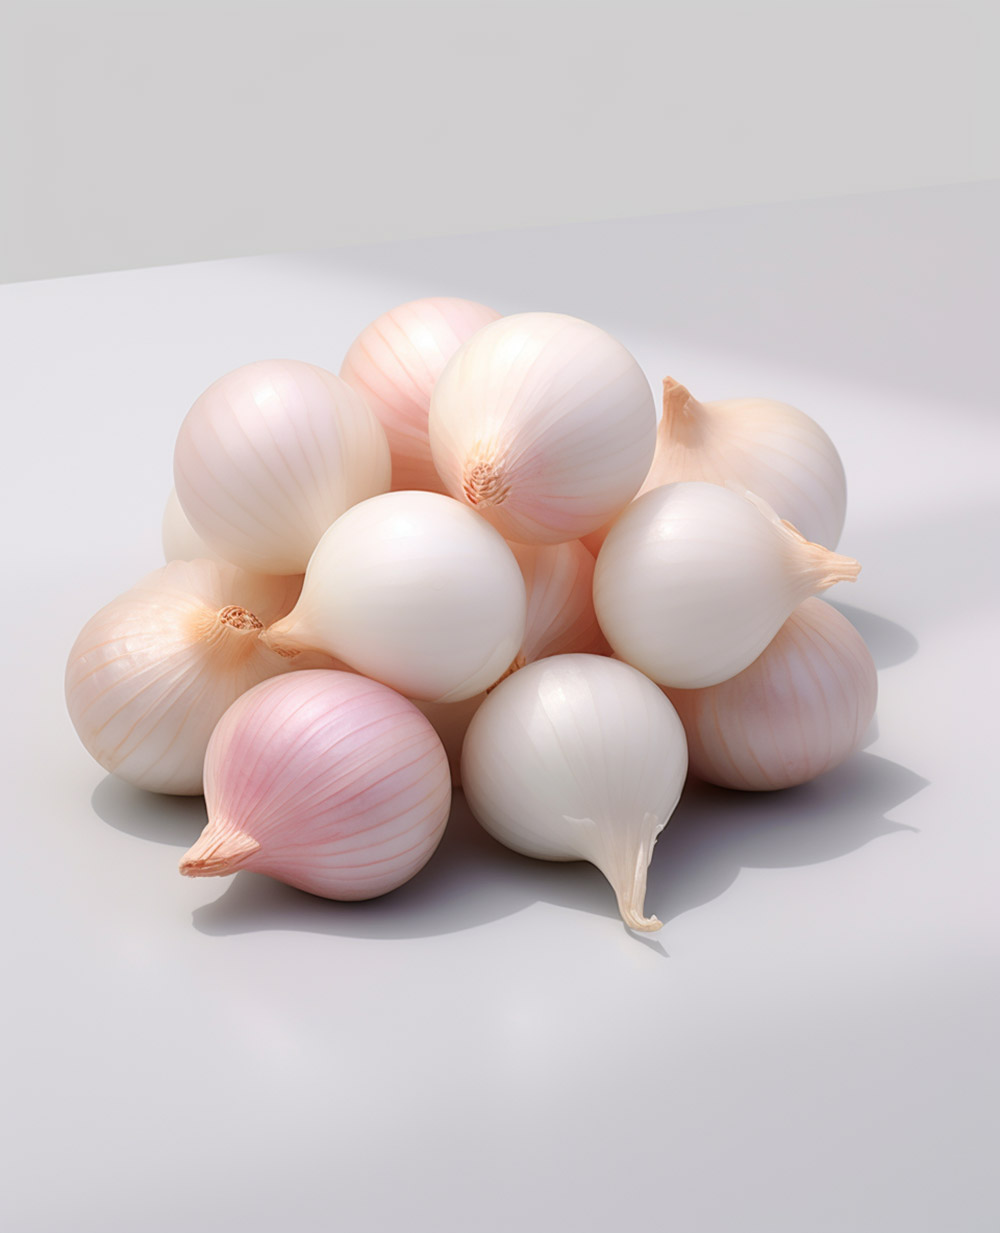 frozen pearl onions